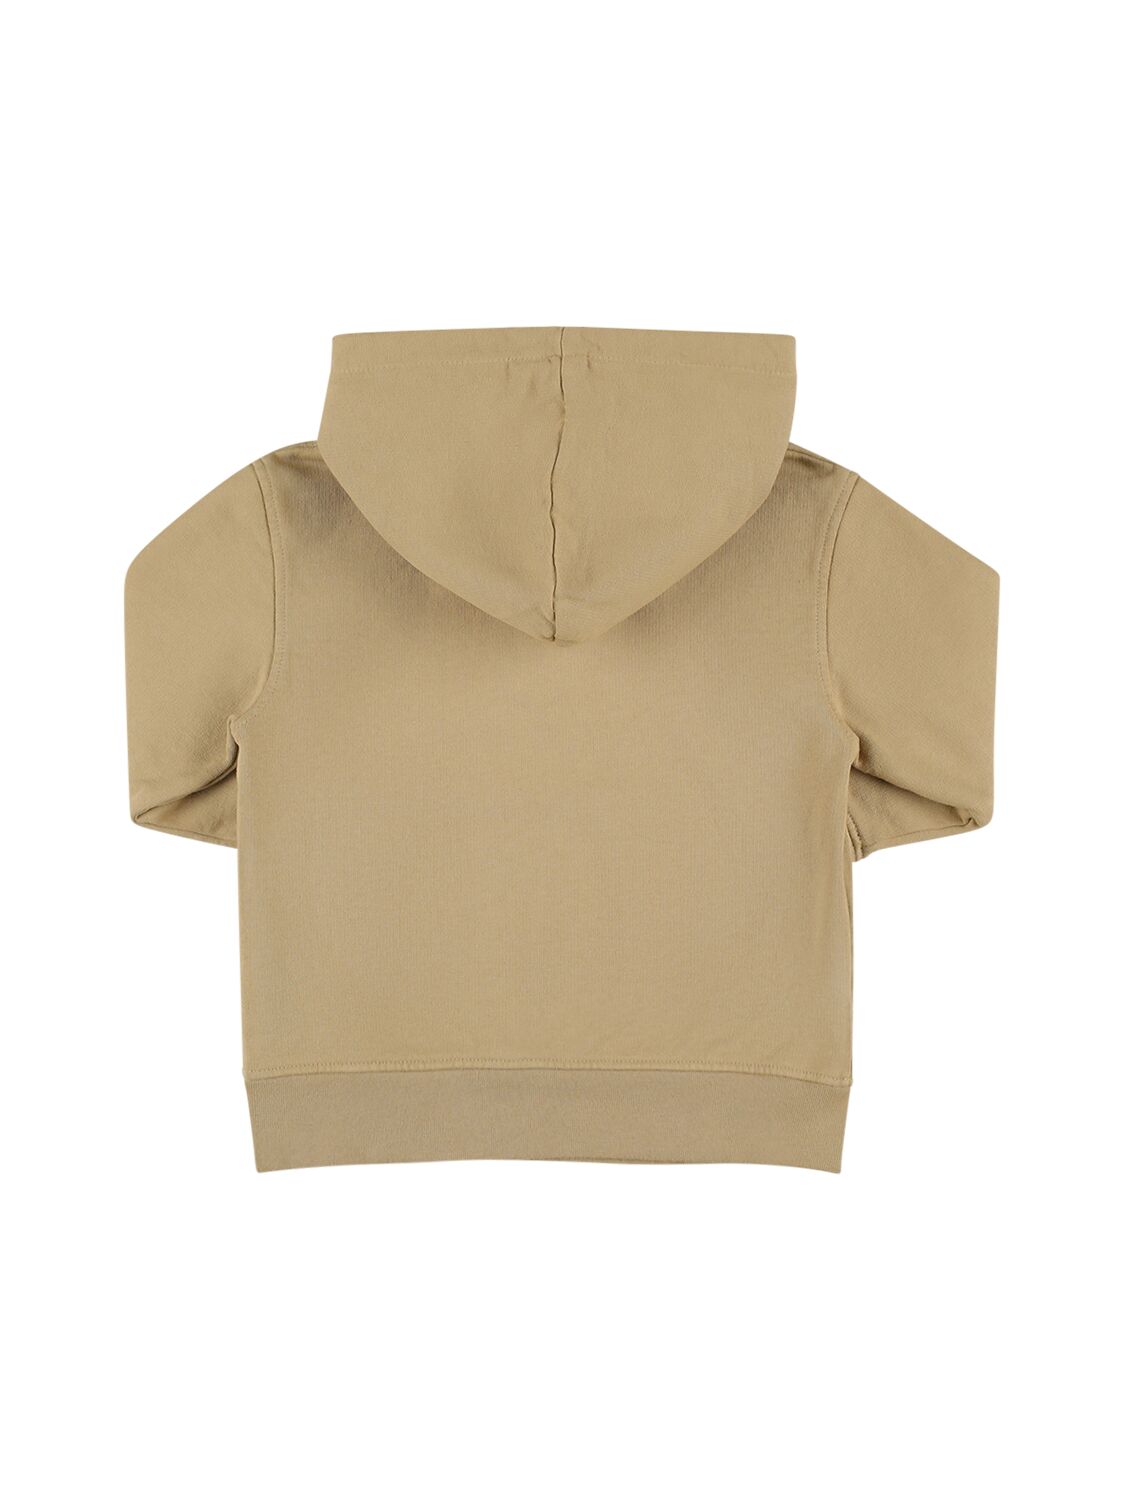 Shop Jacquemus Hooded Cotton Sweatshirt In Dark Beige